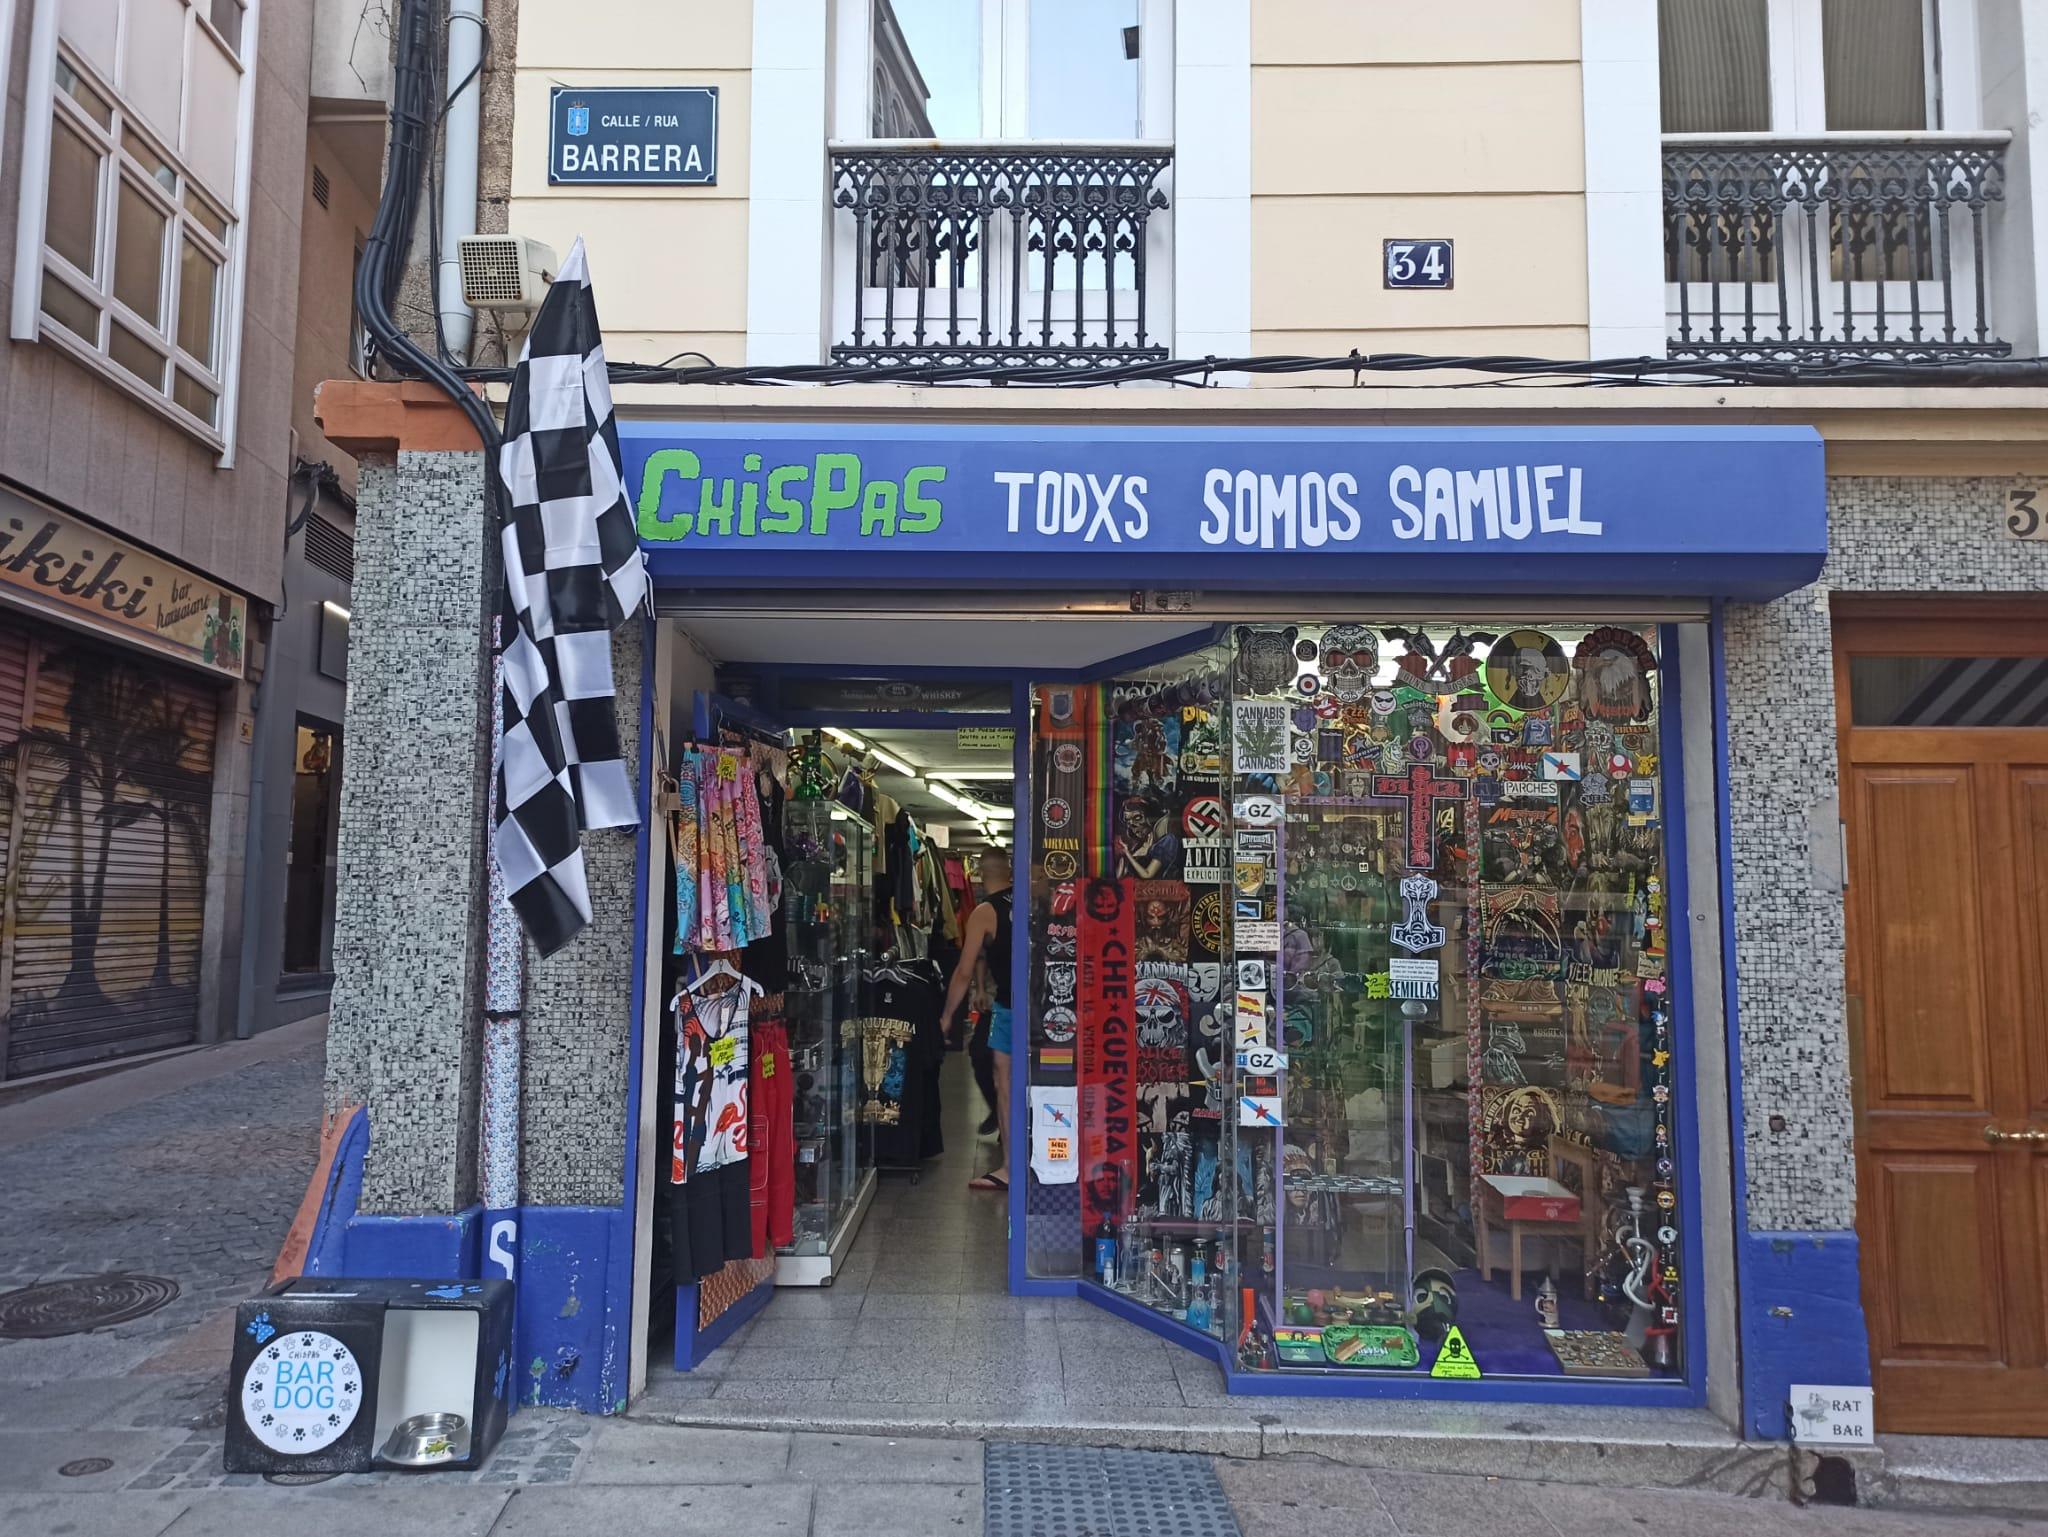 La frase Todxs somos Samuel colocada en el Chispas de A Coruña.